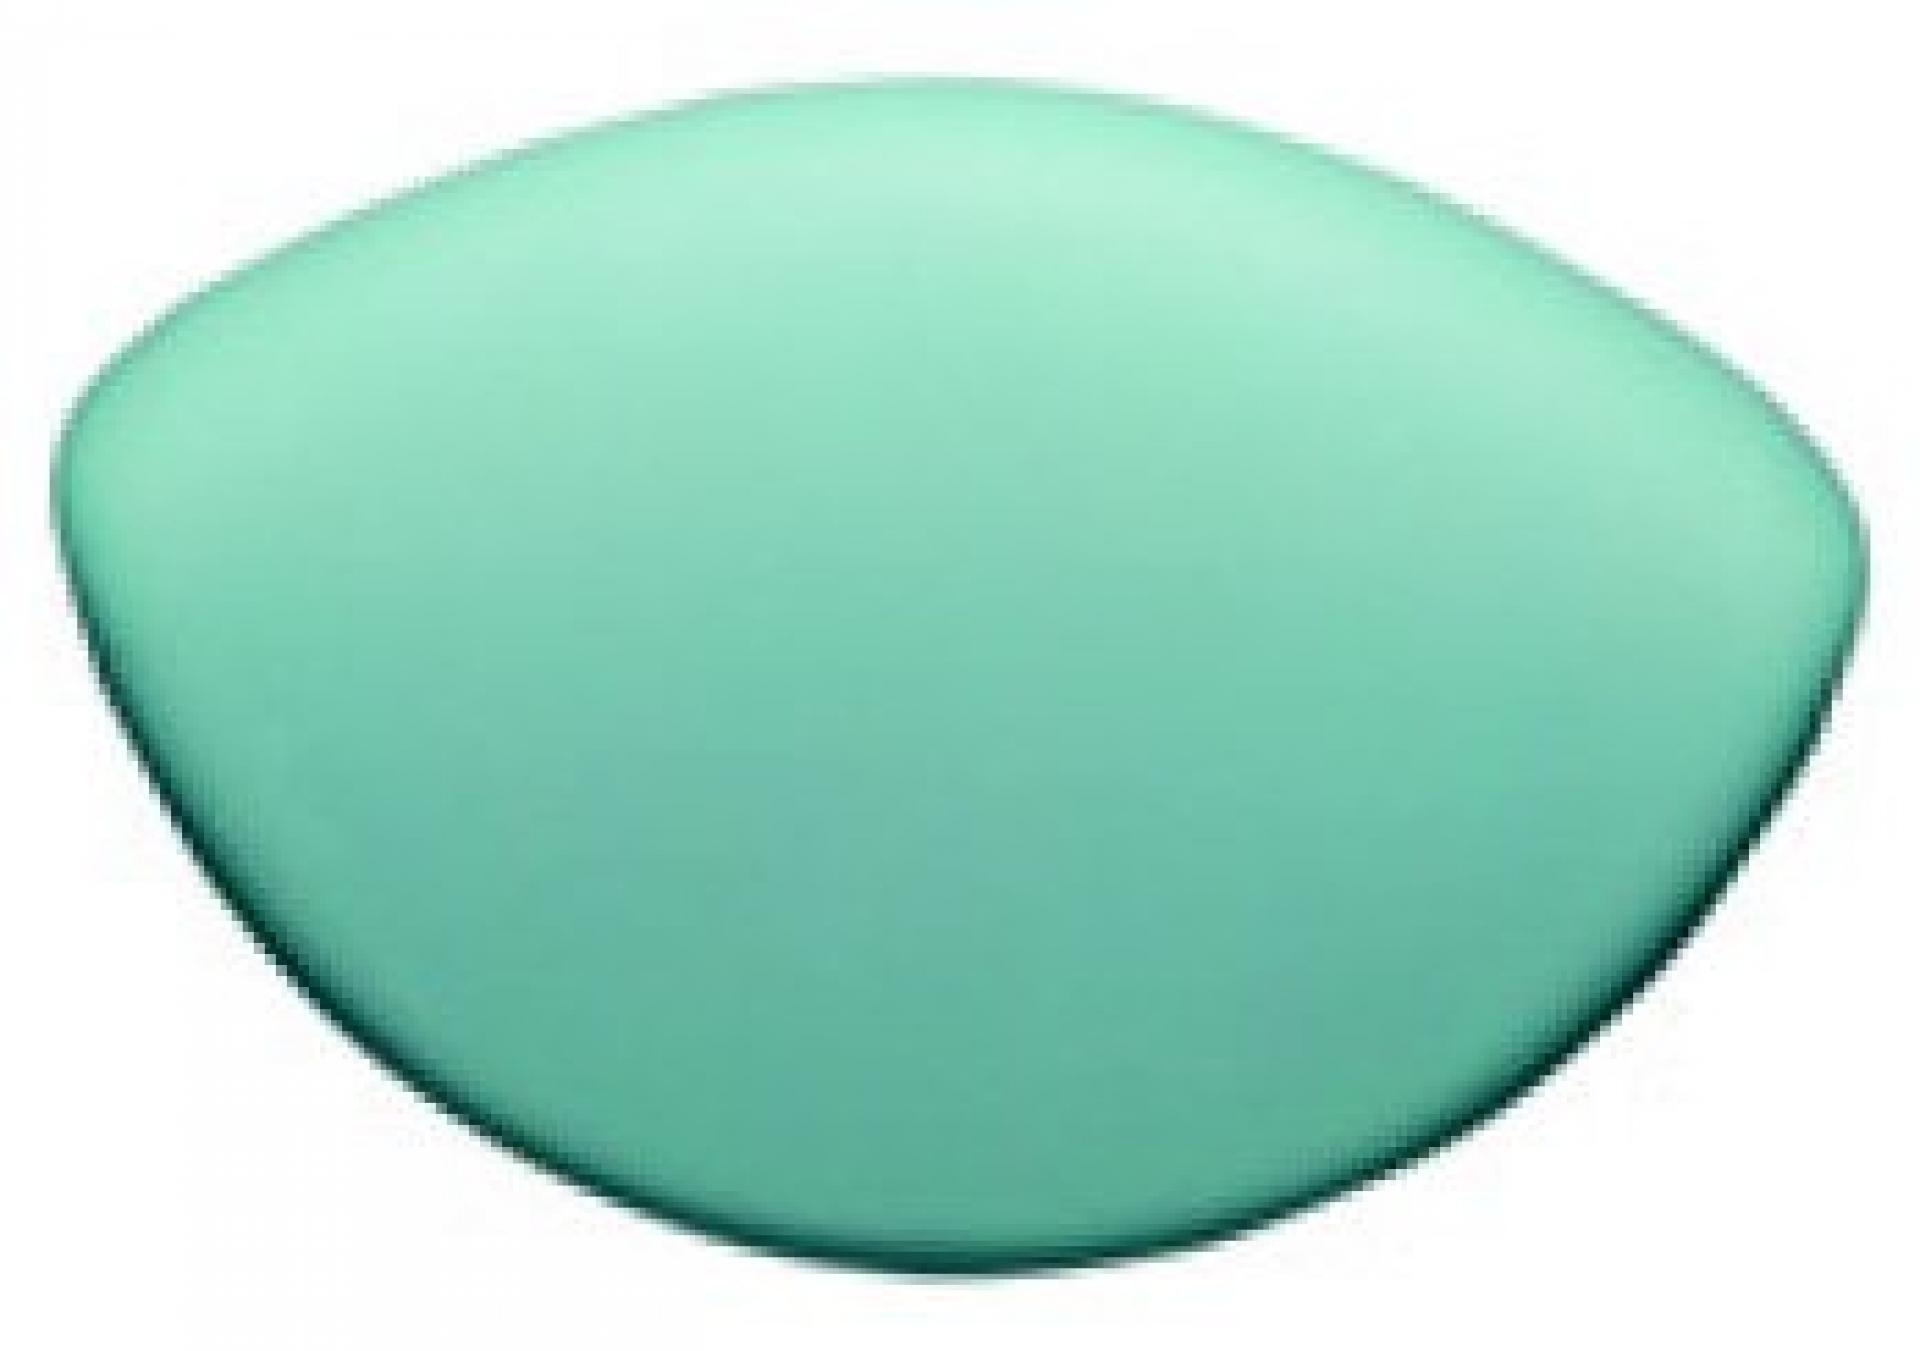 Подголовник для ванны Ravak Rosa 95 зеленый B65500000Z